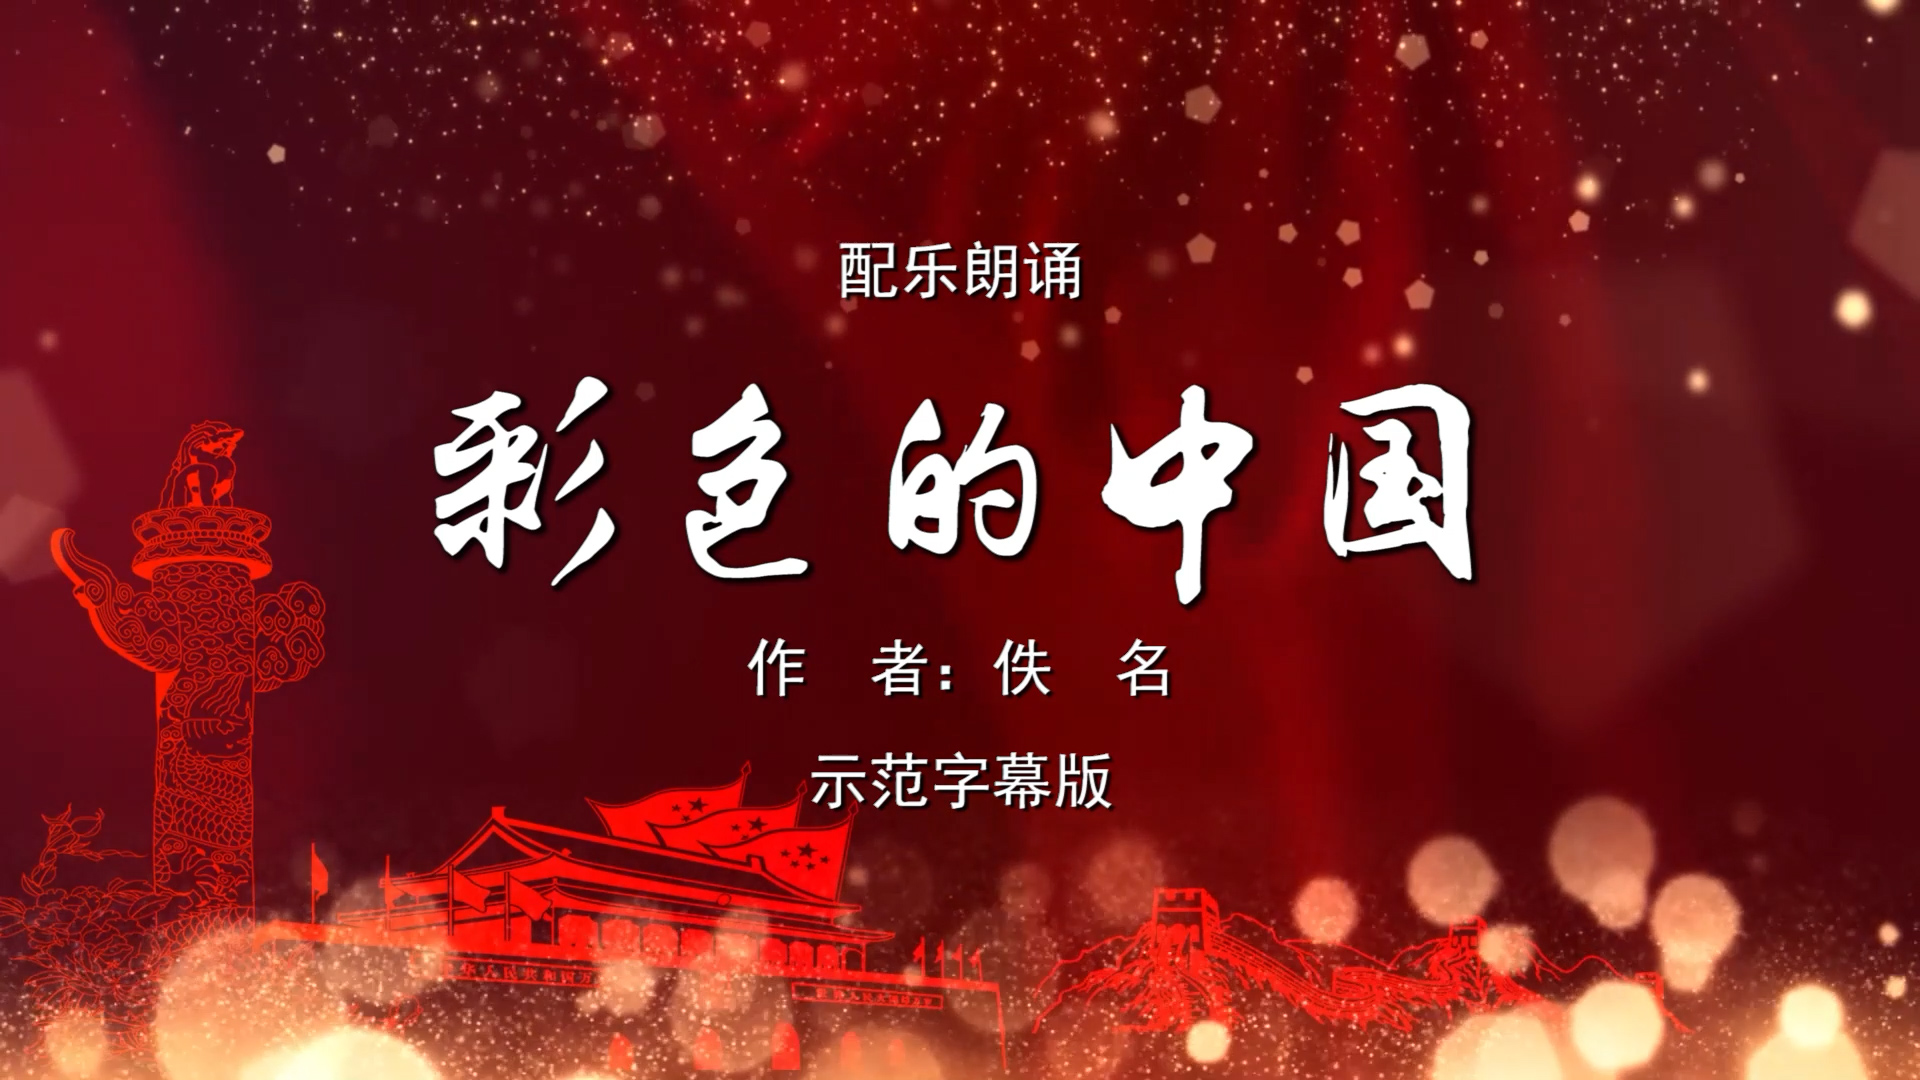 彩色的中国 少儿诗歌朗诵配乐伴奏舞台演出LED背景视频素材TV